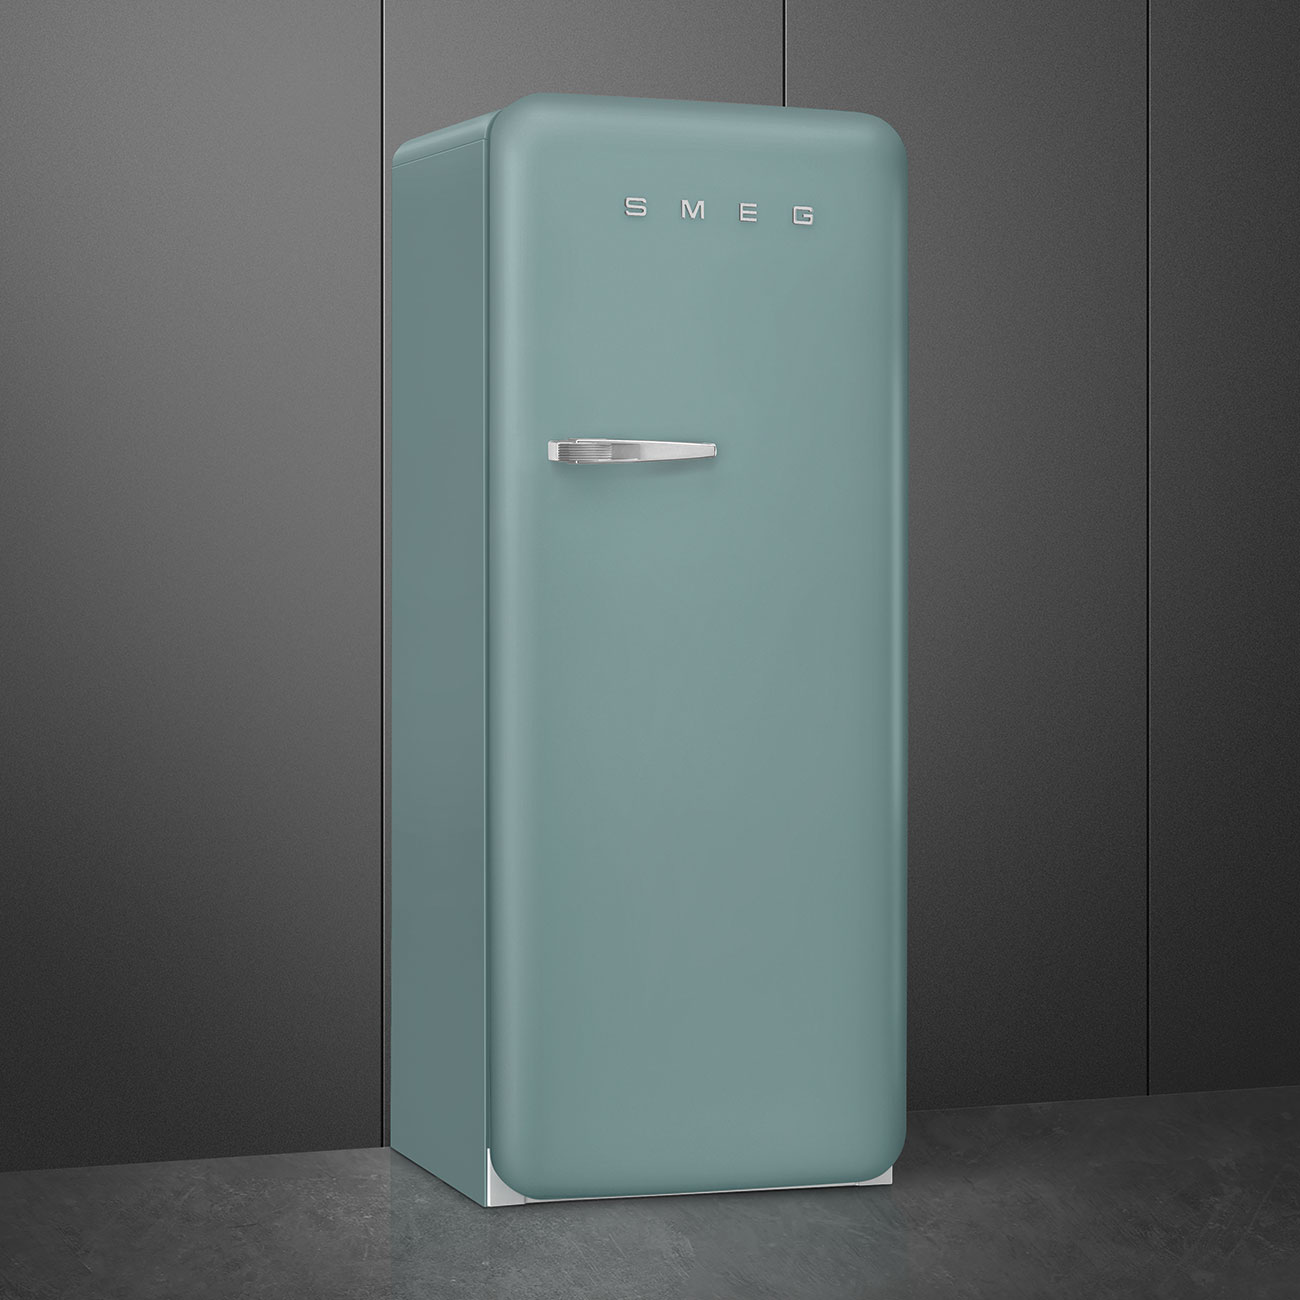 Emerald Green refrigerator - Smeg_2